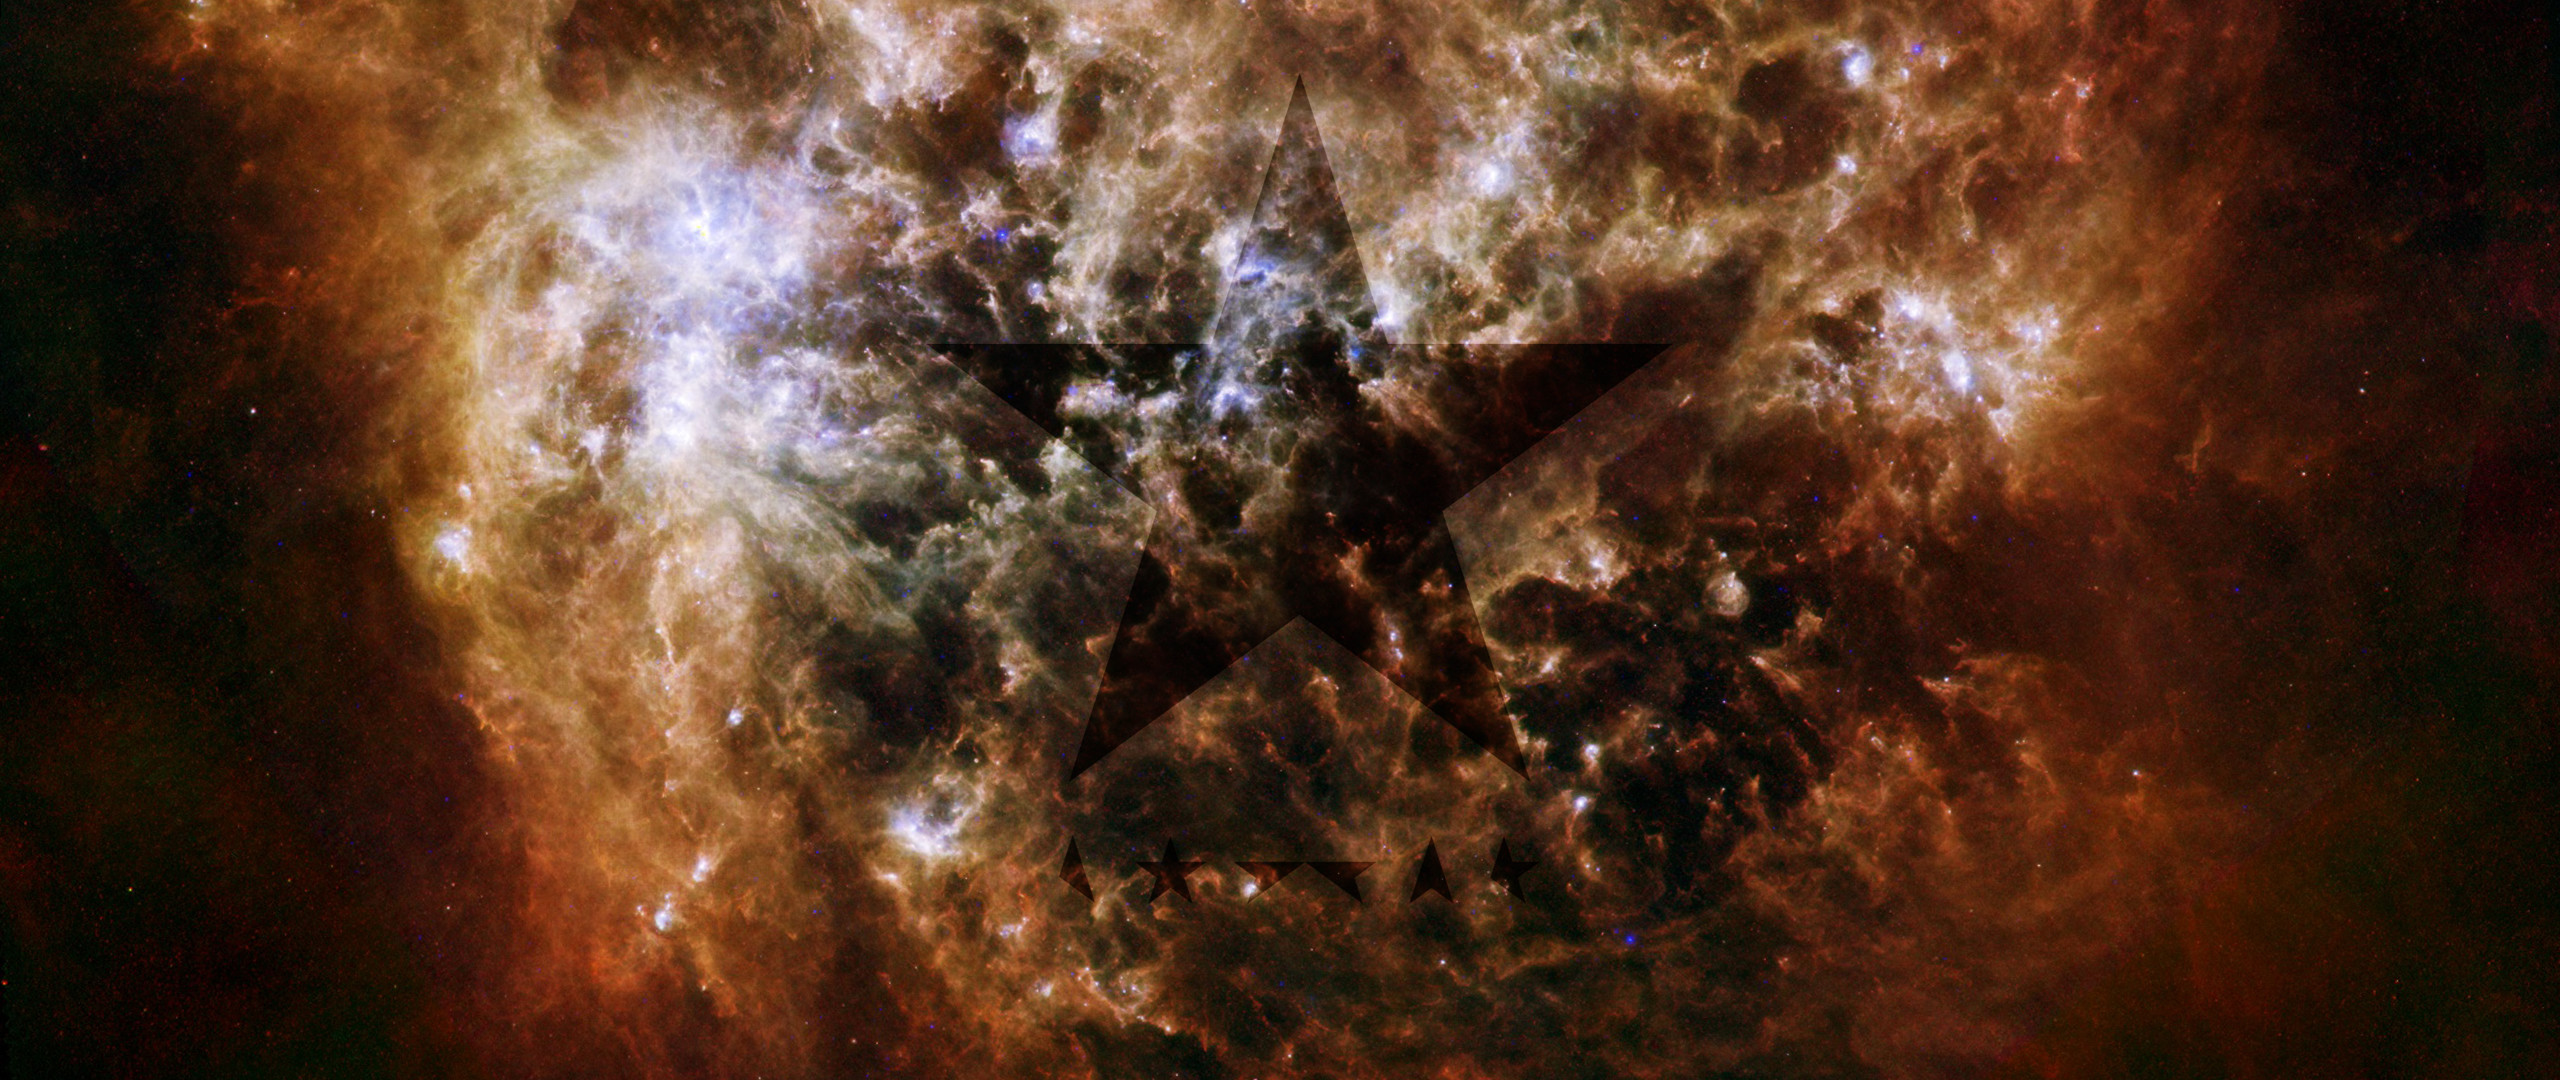 2560x1080 Blackstar Galaxy - My Current Wallpaper ...